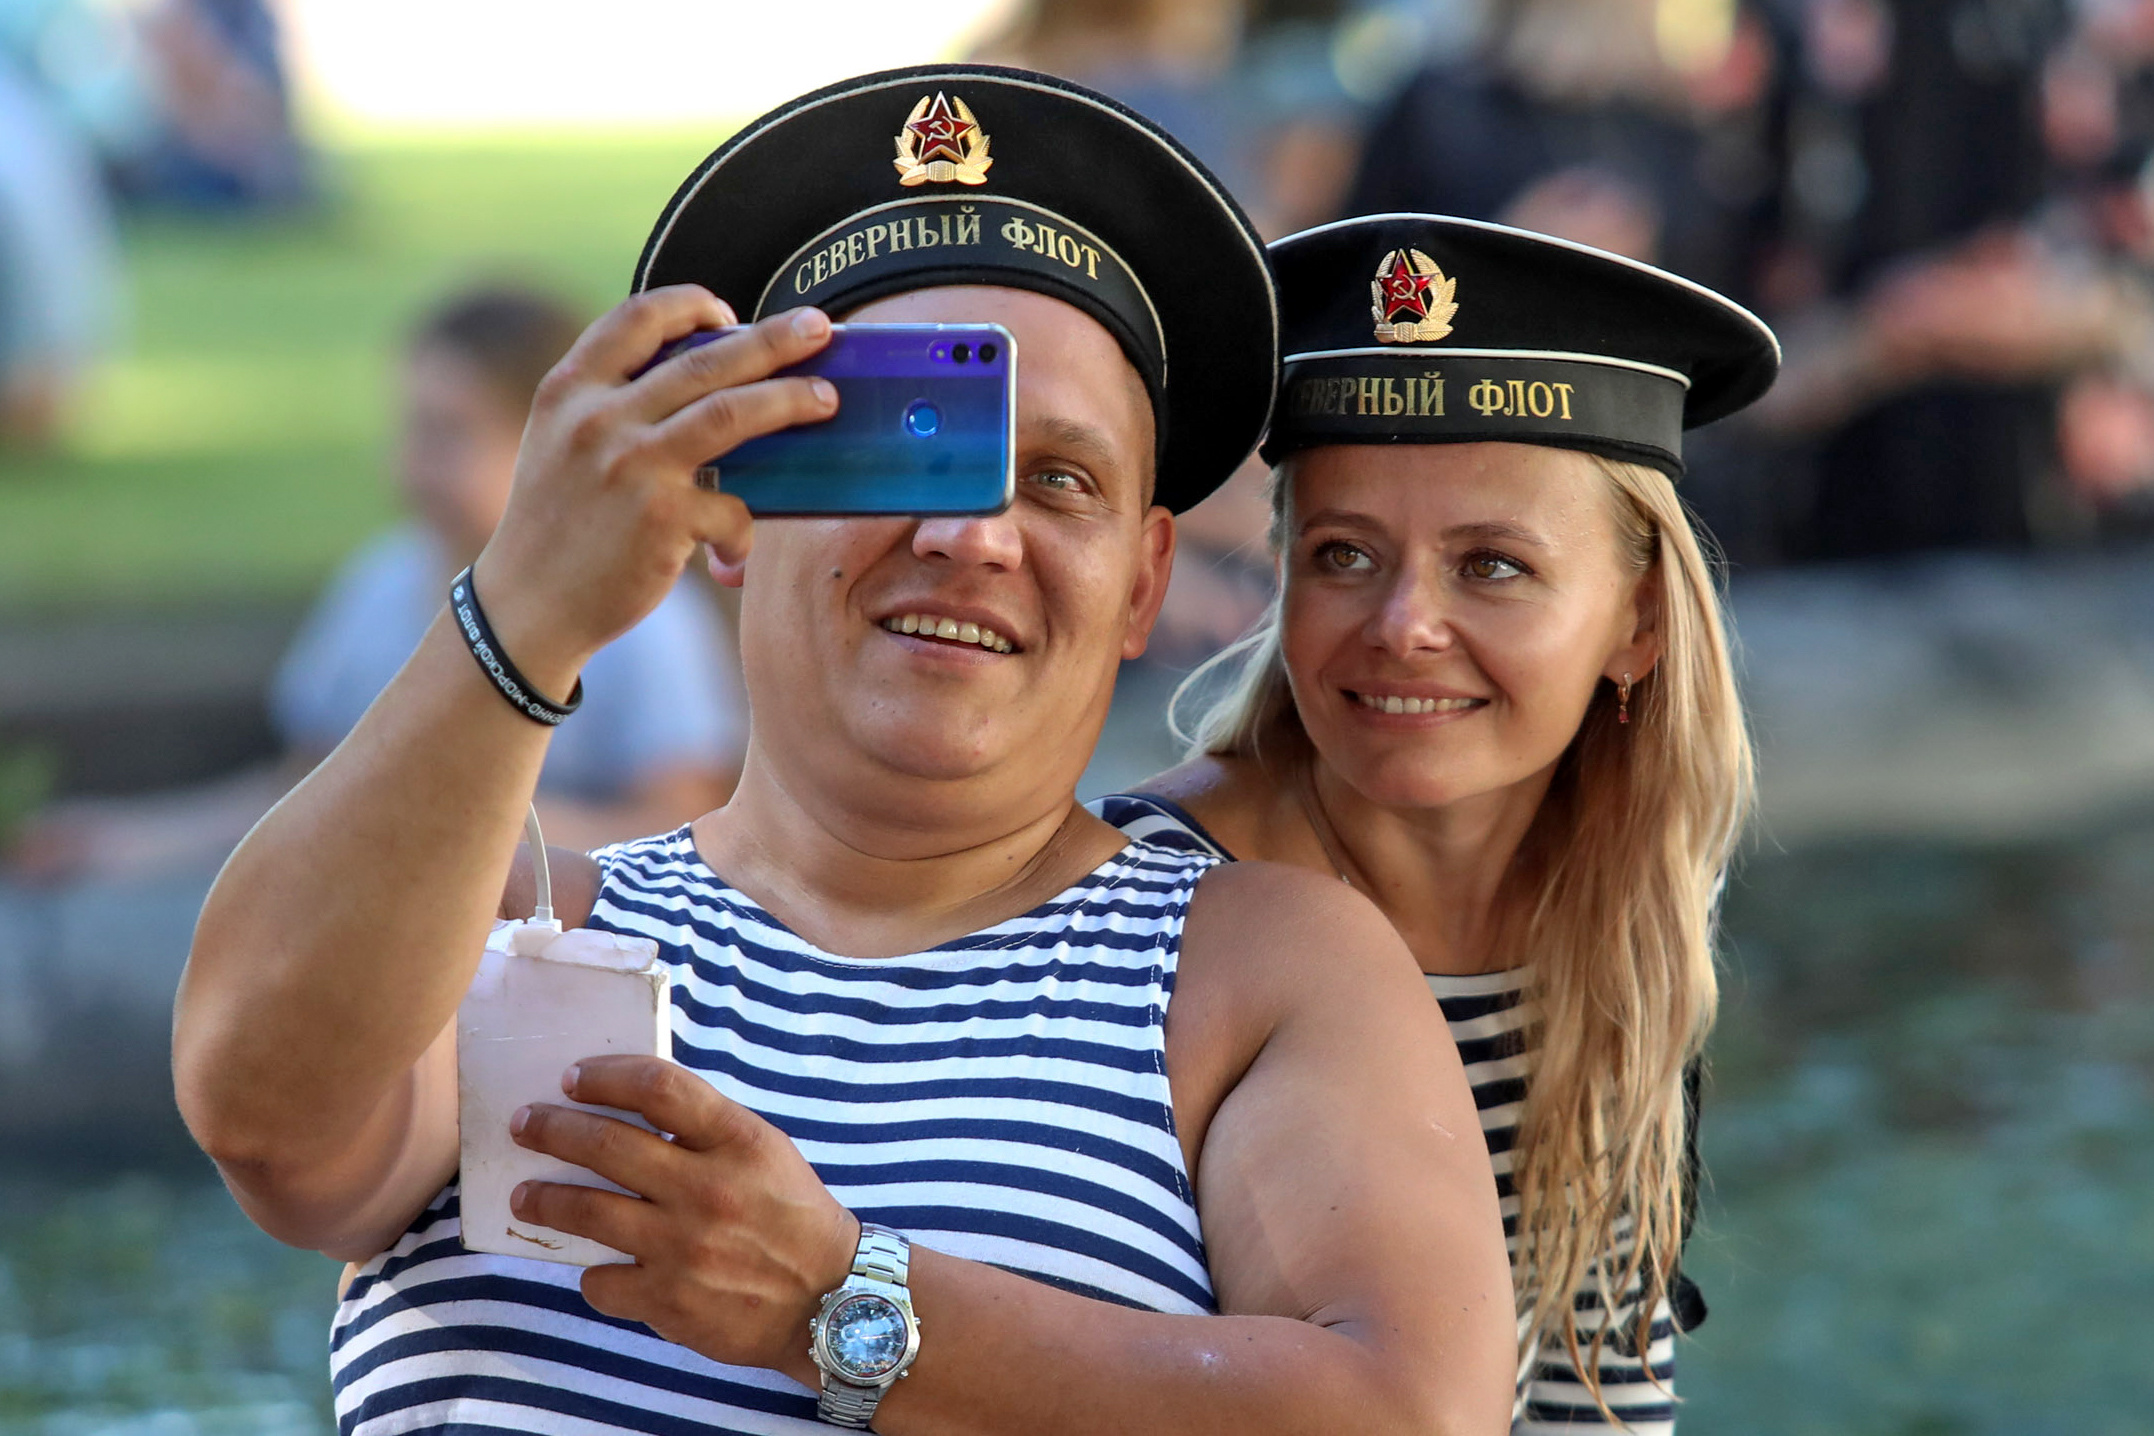  В России появилась медаль для жён подводников Северного флота

